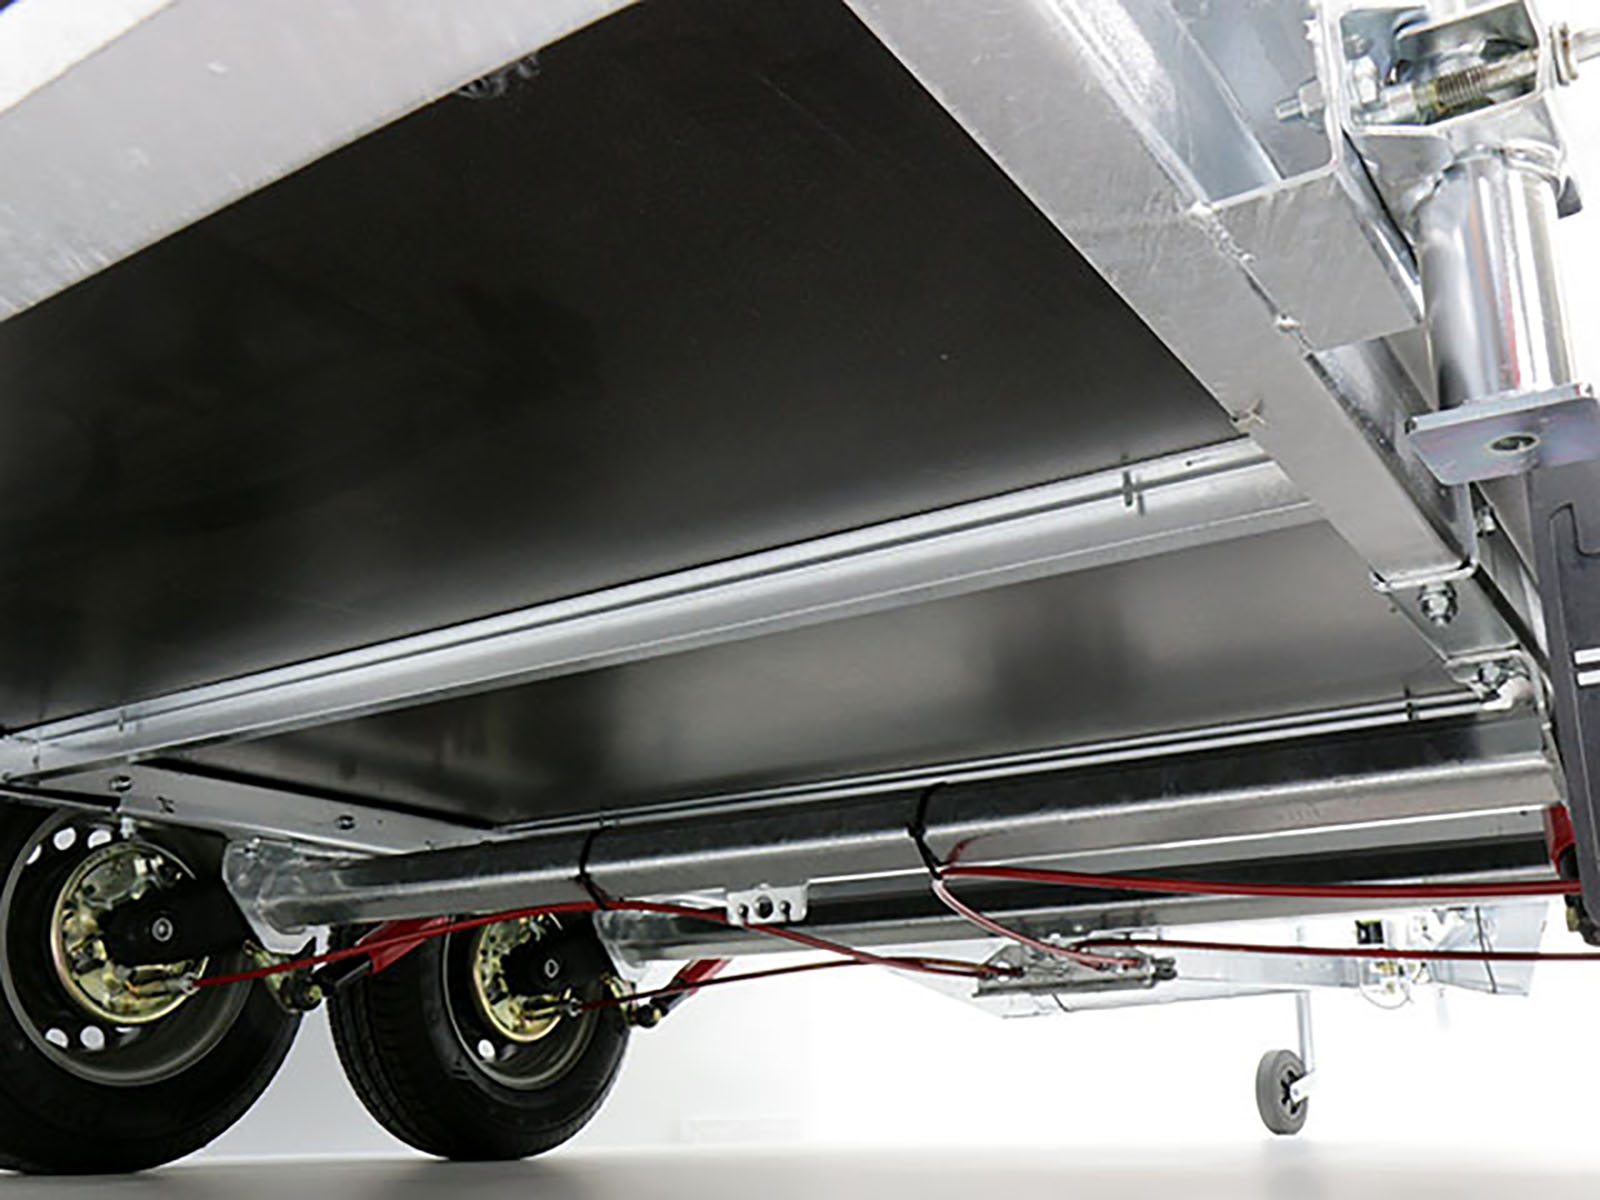 Gebraucht Sonstige Koffer Anhaenger Blyss Kofferanhaenger 146x357cm Hoehe 180cm 2 7t_2148_16uR10N40Zryuic